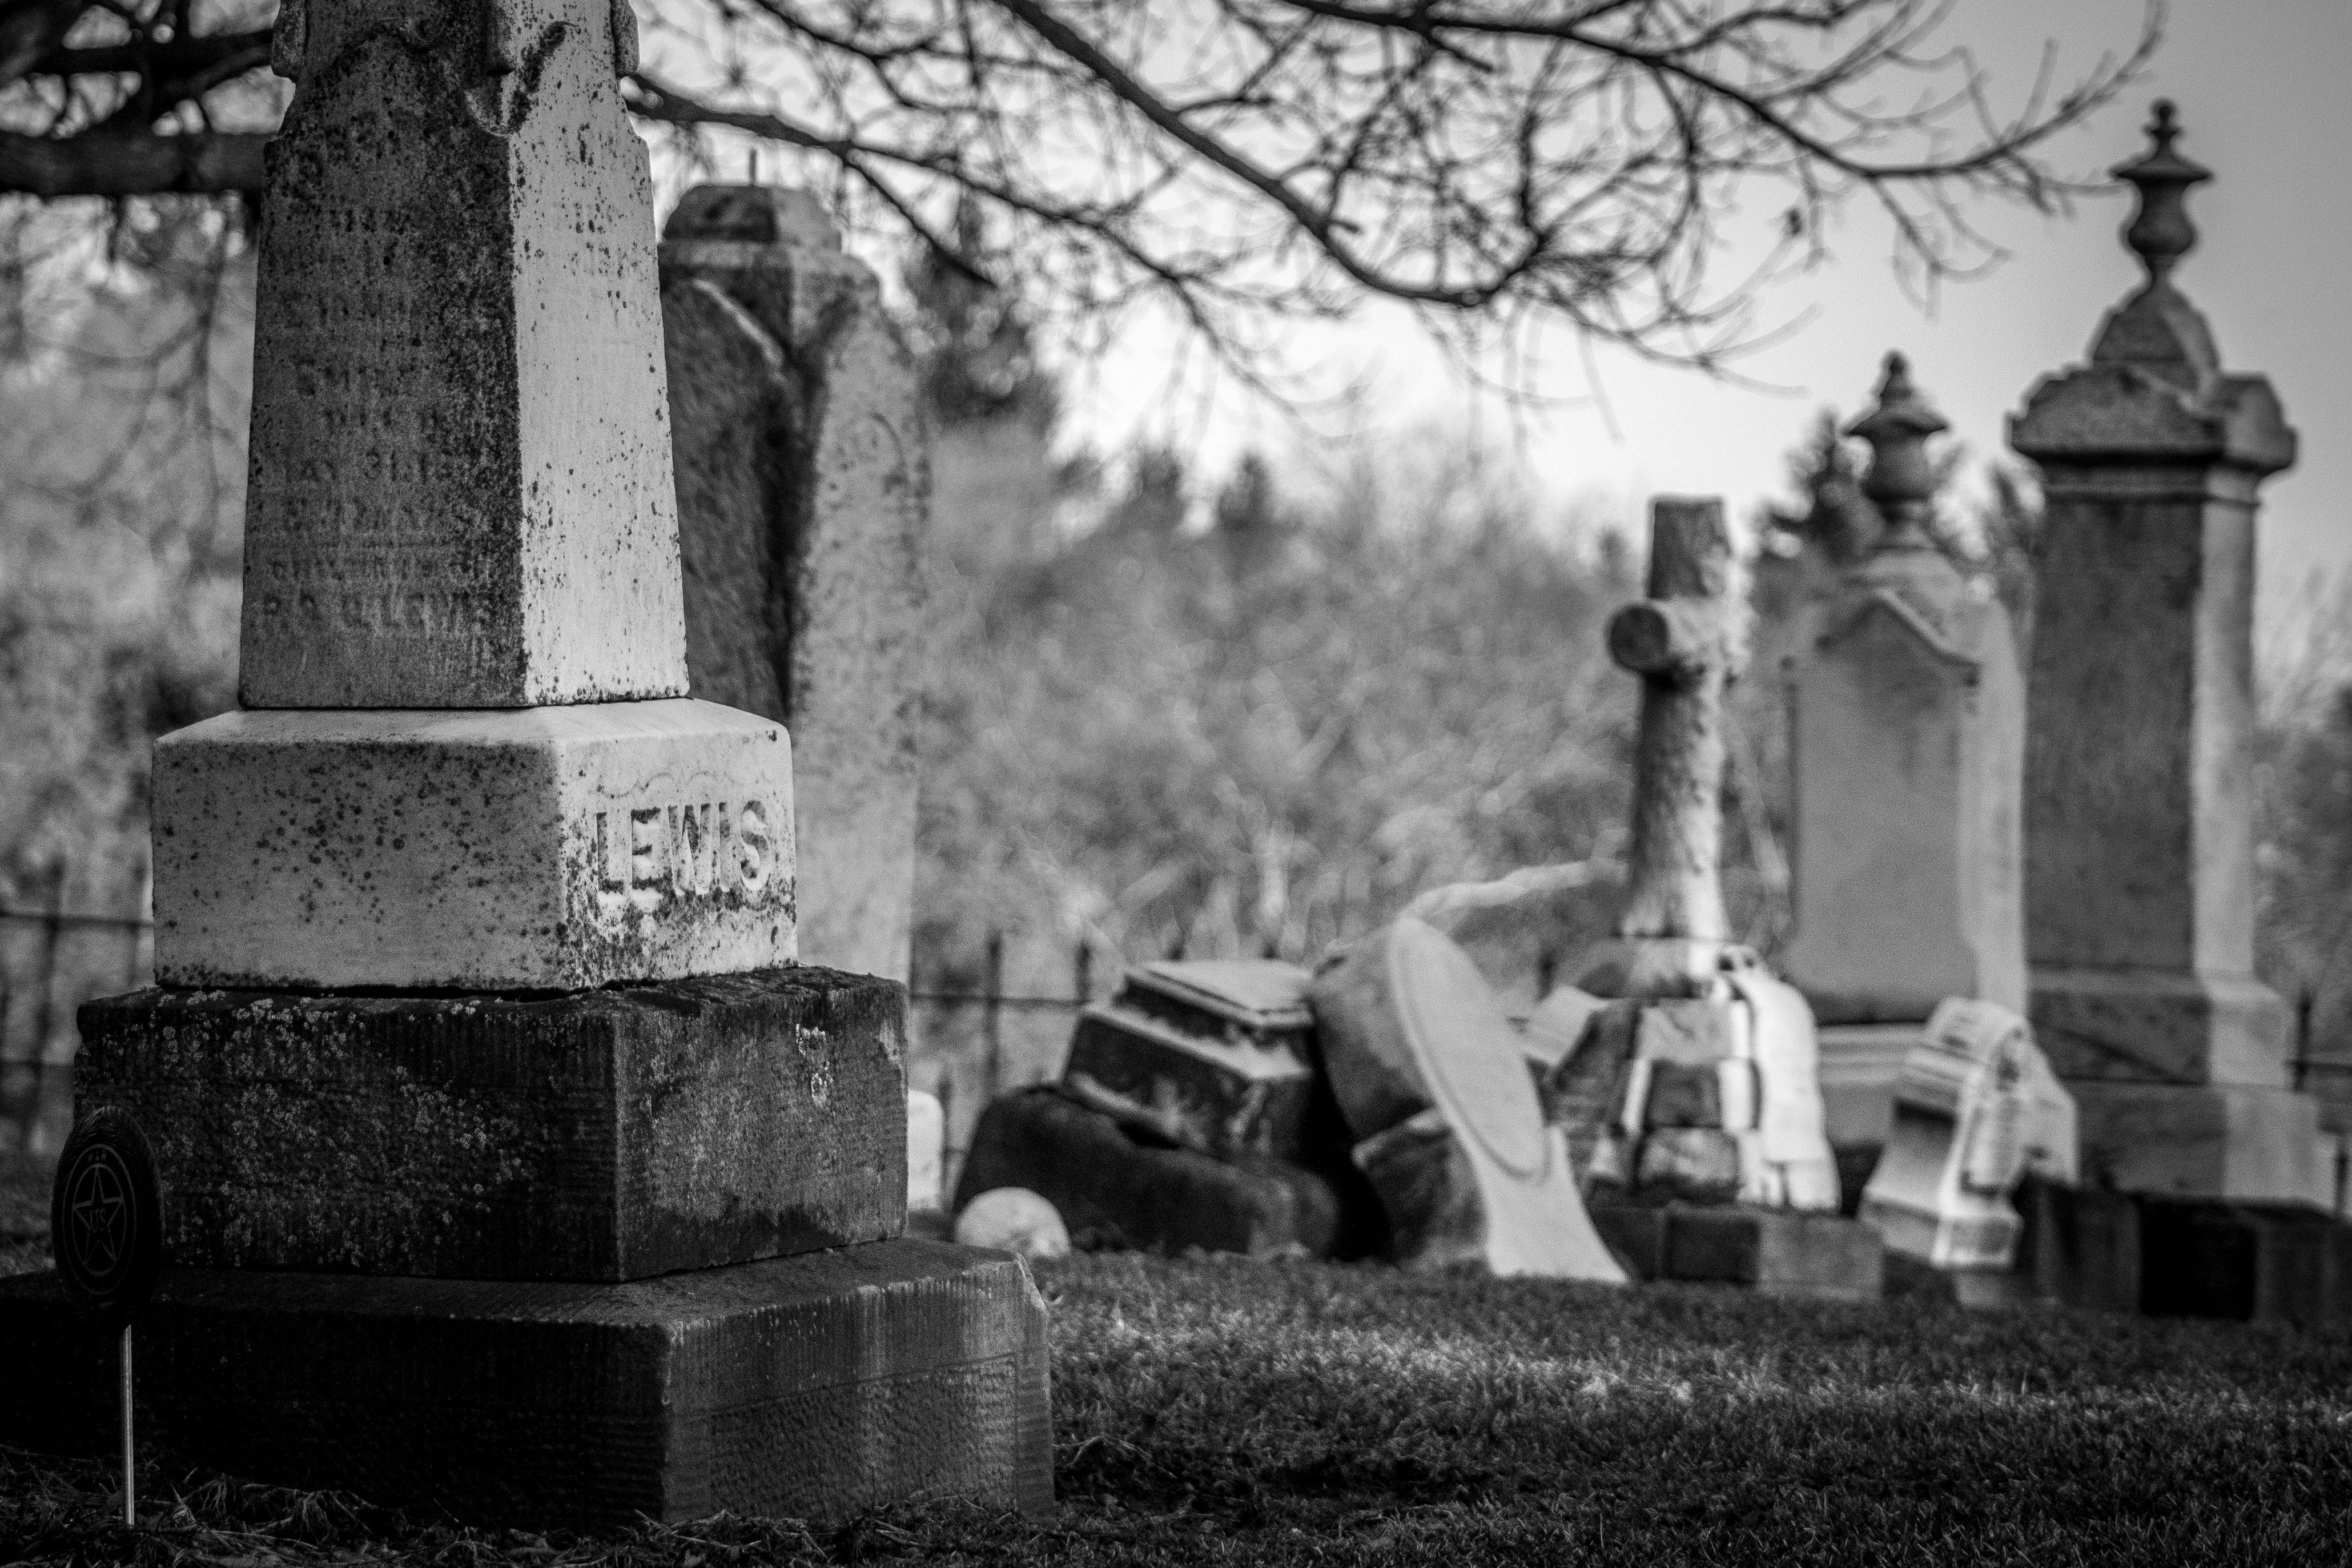 wendy scofield 531052 unsplash.jpg?resize=412,232 - Un étudiant profane un cimetière et se fait enfermer dans une tombe...